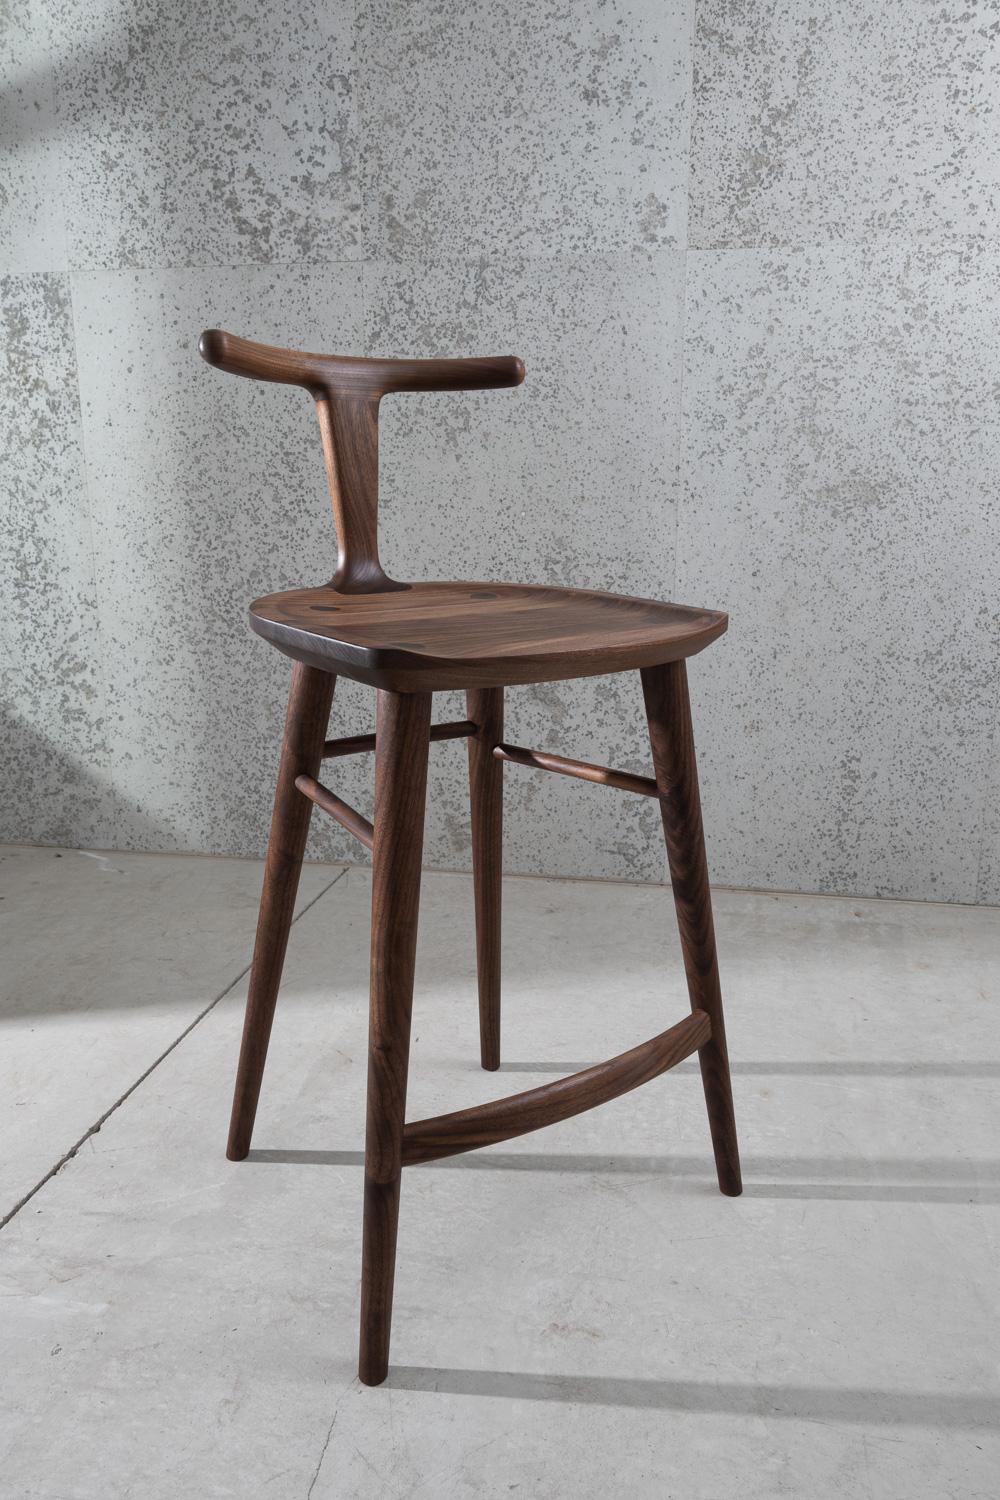 Ce tabouret de bar, conçu par Justin Nelson pour Fernweh Woodworking, est issu de la chaise de salle à manger Oxbend. La collection Oxbend est née du désir de créer des sièges confortables, organiques et élégants dans leur simplicité. Ce tabouret